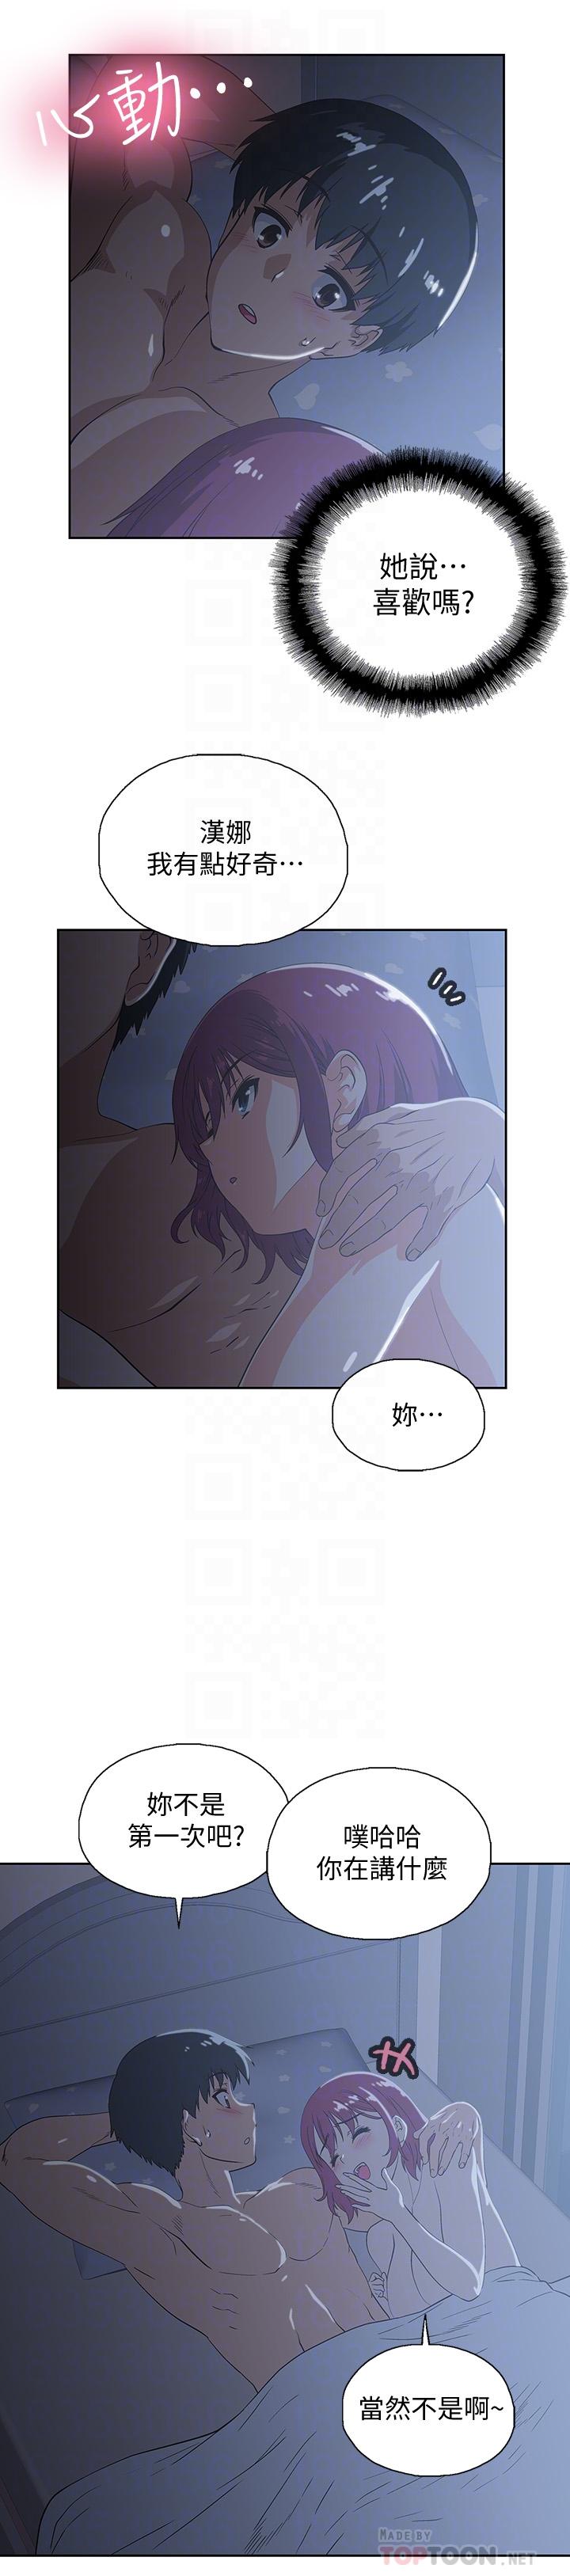 《梦幻速食店》漫画 第5话 要清纯可爱还是性感小恶魔?